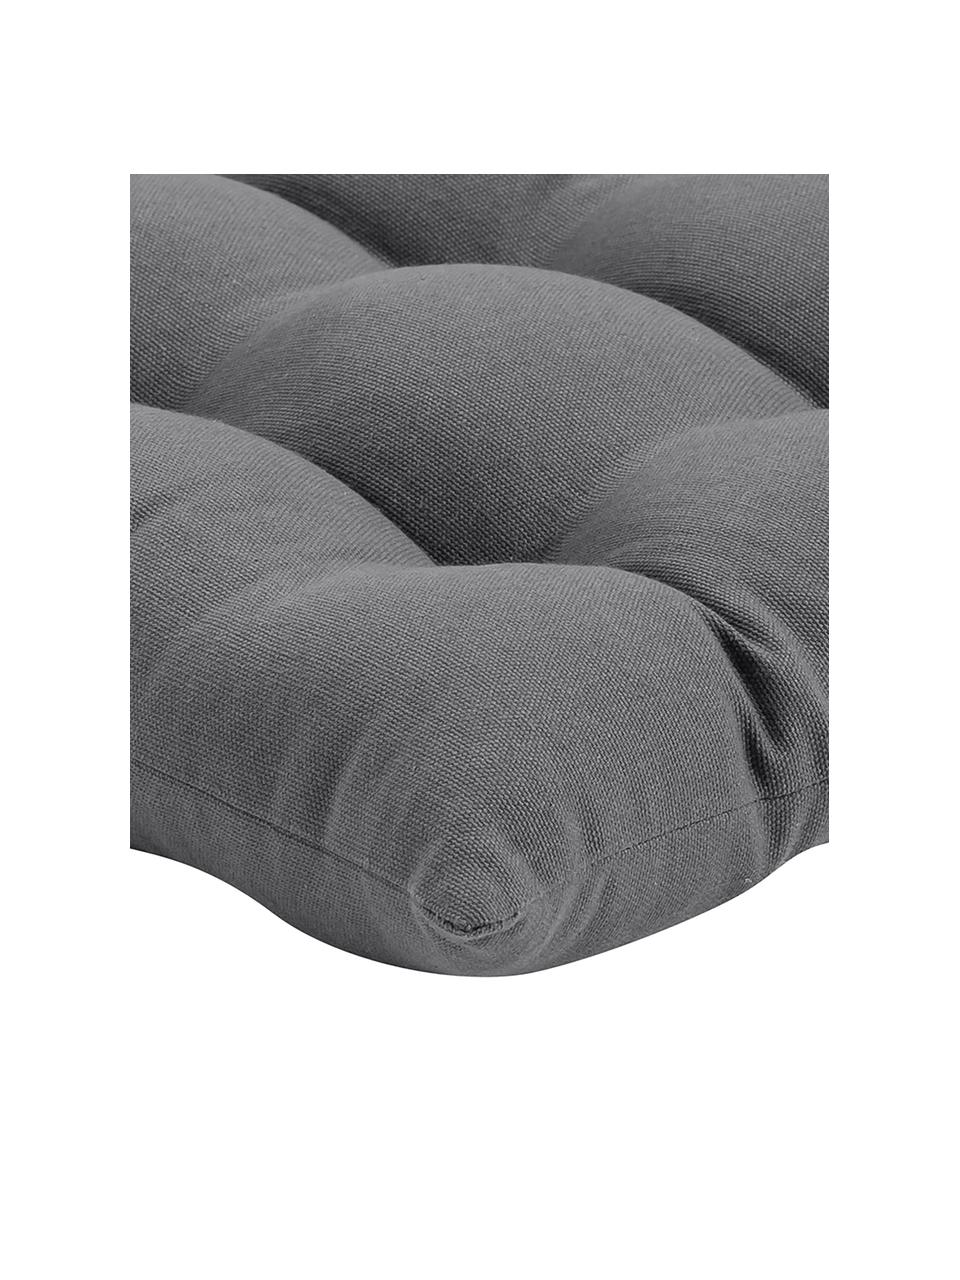 Poduszka na krzesło z bawełny Ava, Ciemny szary, S 40 x D 40 cm